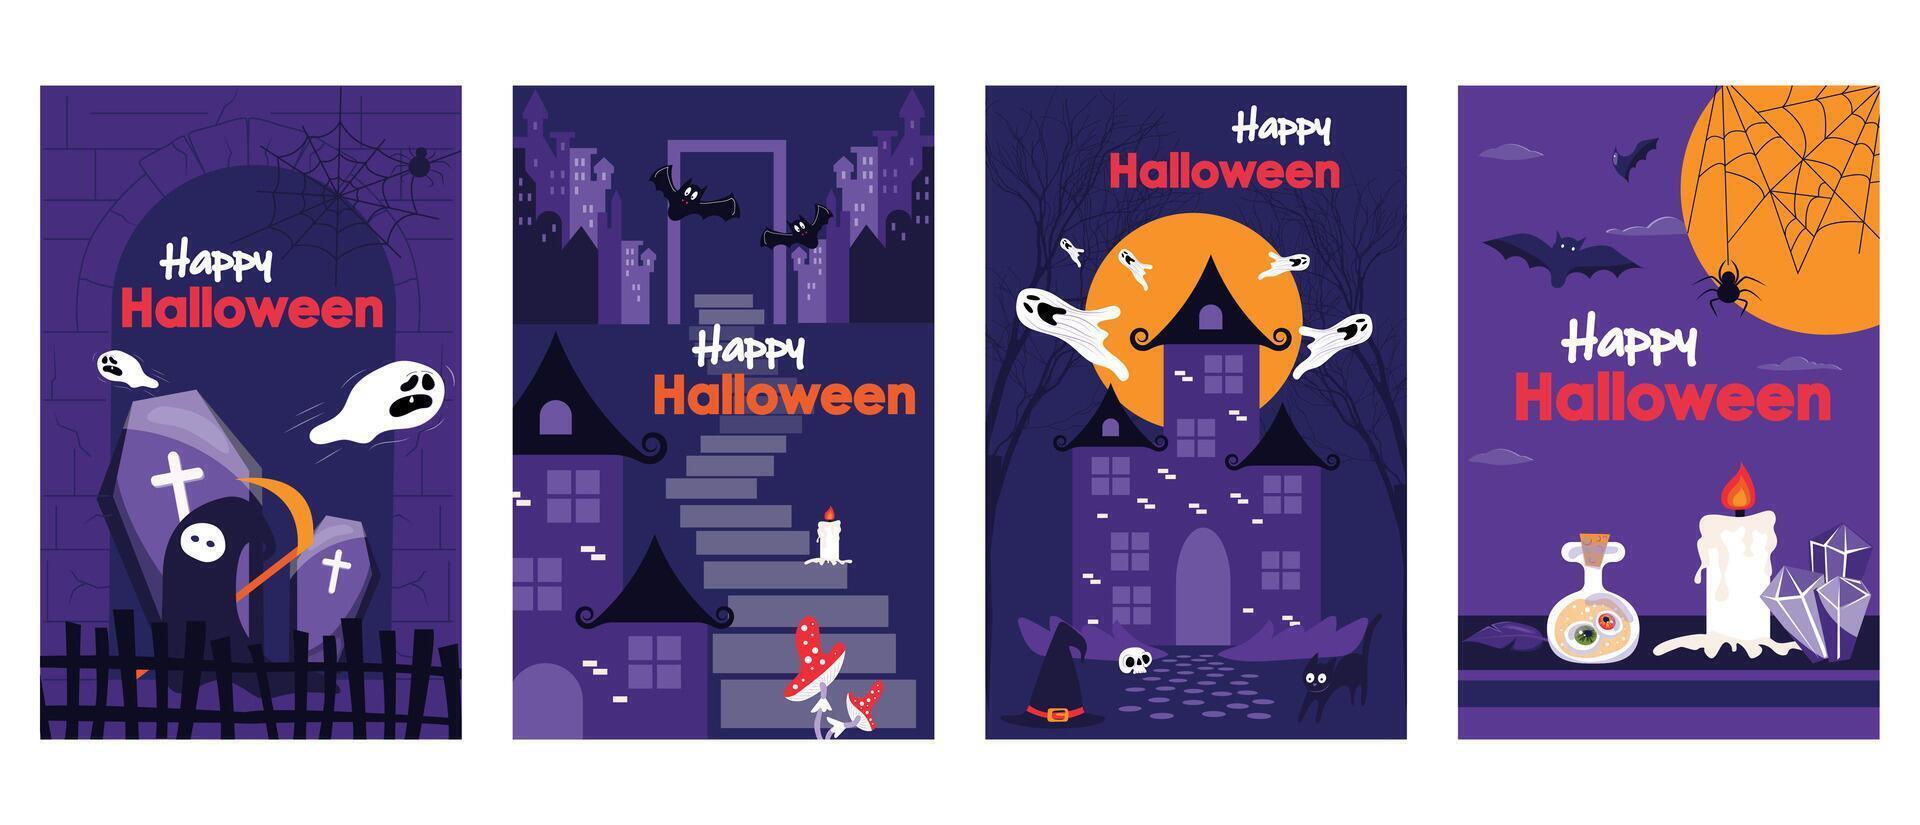 halloween Semester omslag broschyr uppsättning i trendig platt design. affisch mallar med läskigt död karaktär, flygande spöken, gammal slott och hus med måne, kuslig trolldryck och ljus. vektor illustration.